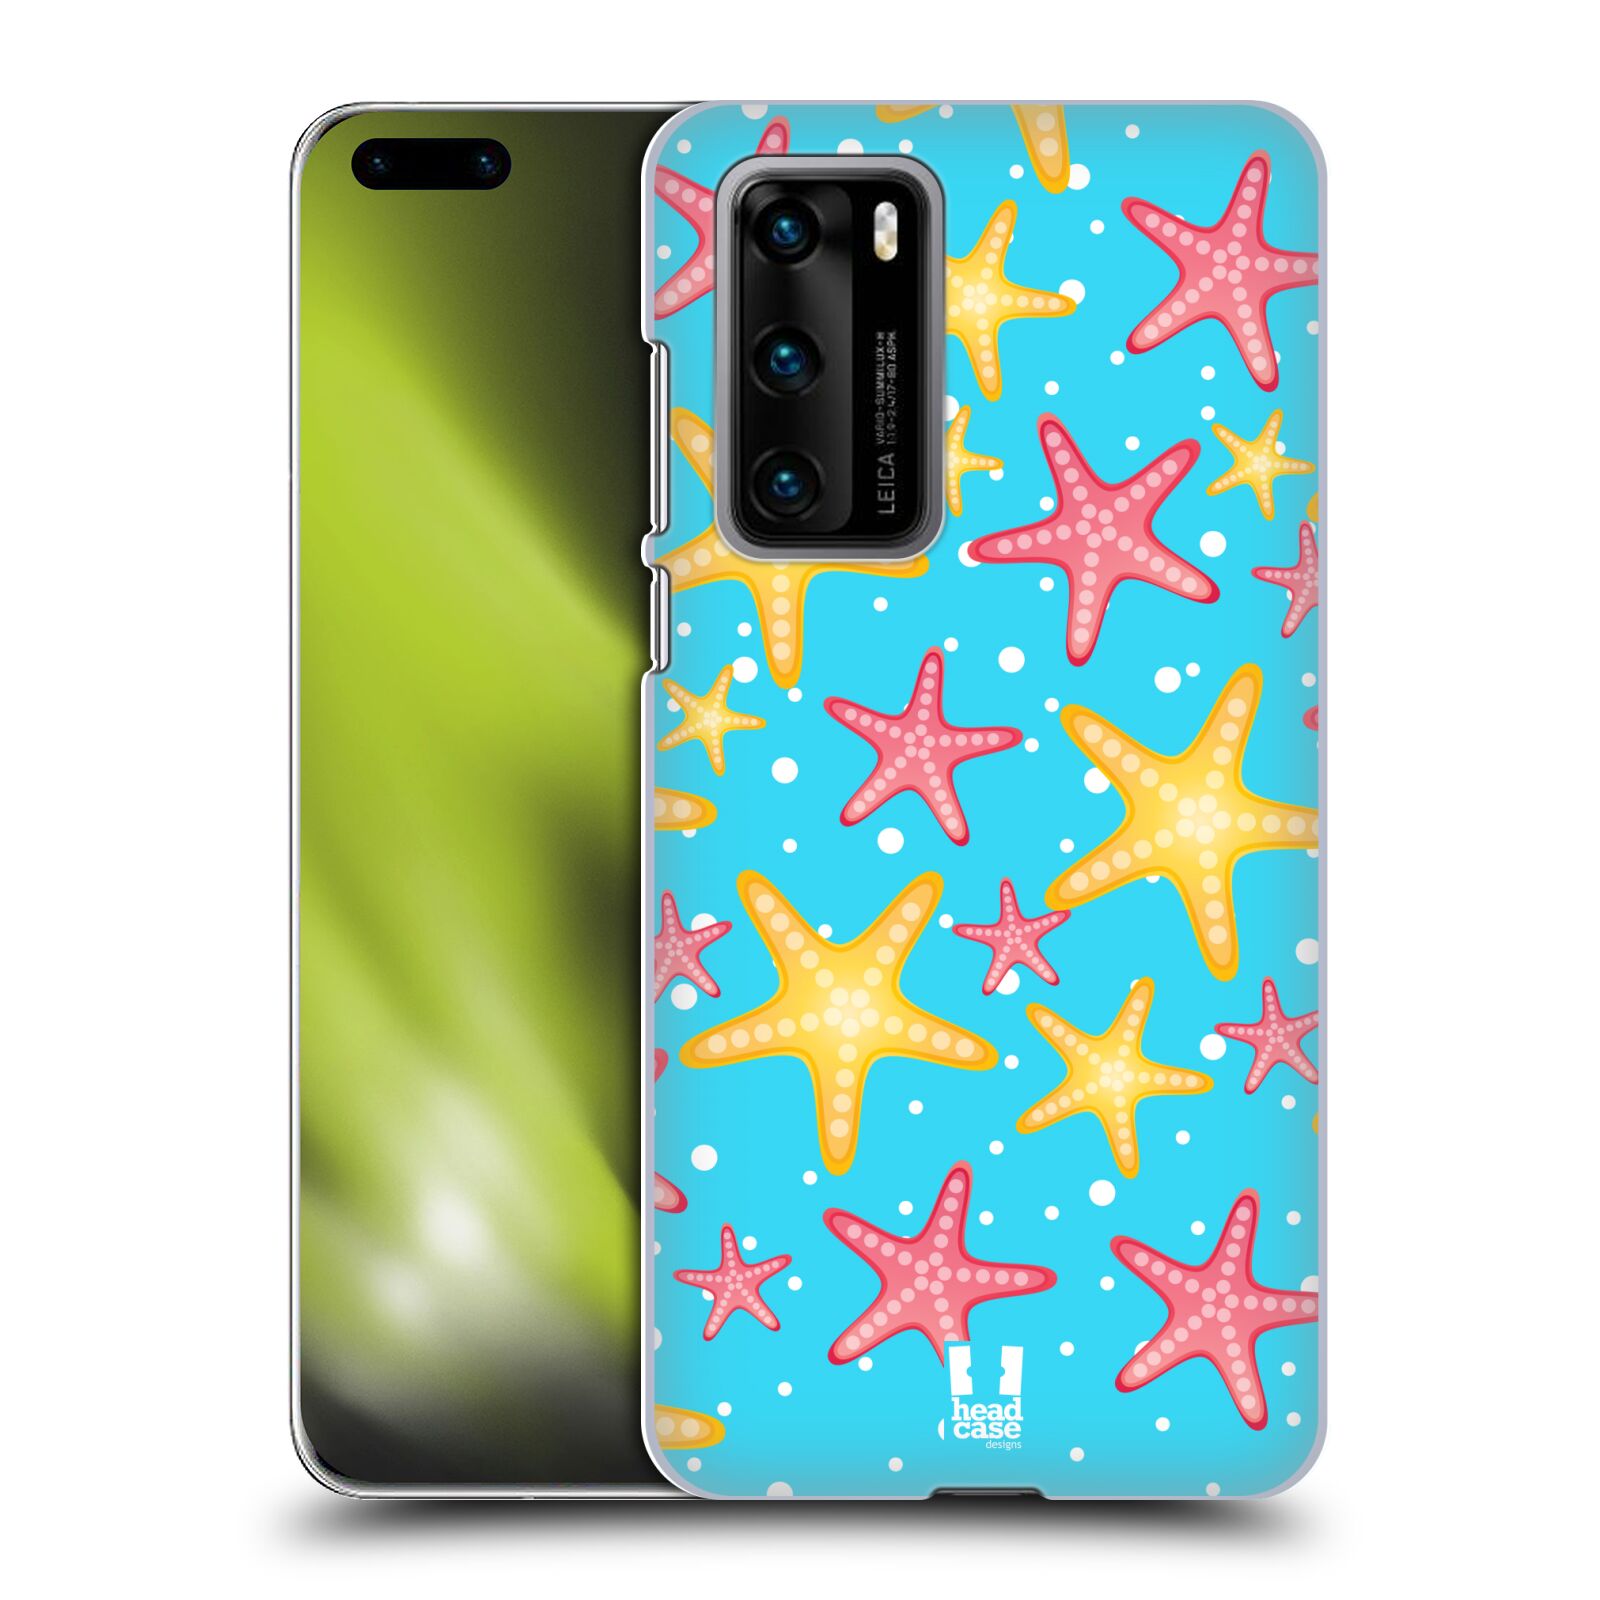 Zadní obal pro mobil Huawei P40 - HEAD CASE - kreslený mořský vzor hvězda